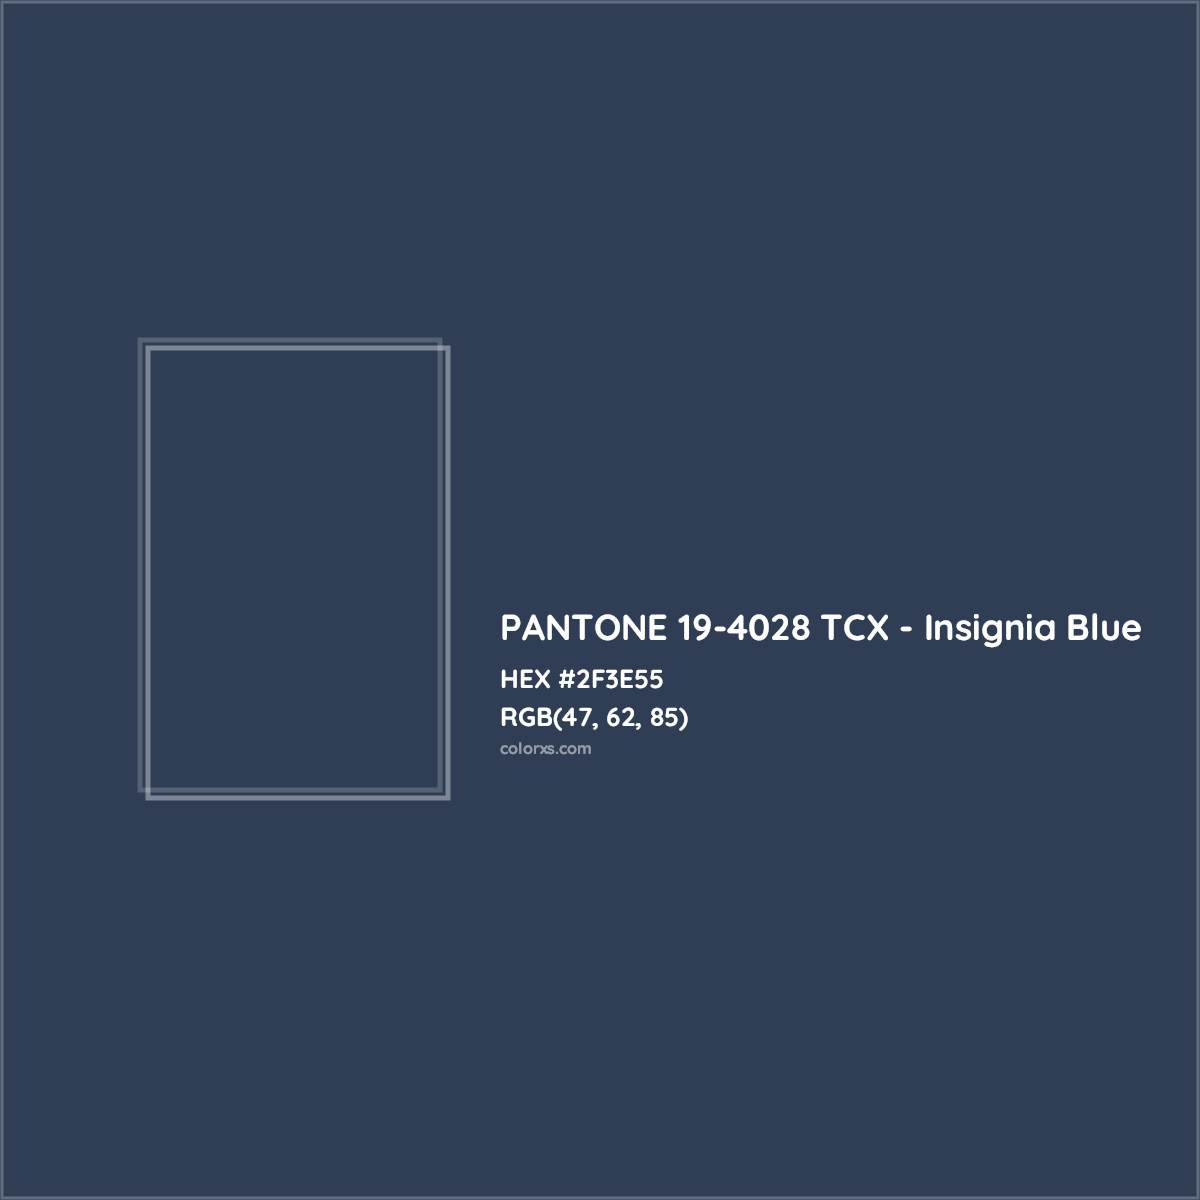 HEX #2F3E55 PANTONE 19-4028 TCX - Insignia Blue CMS Pantone TCX - Color Code